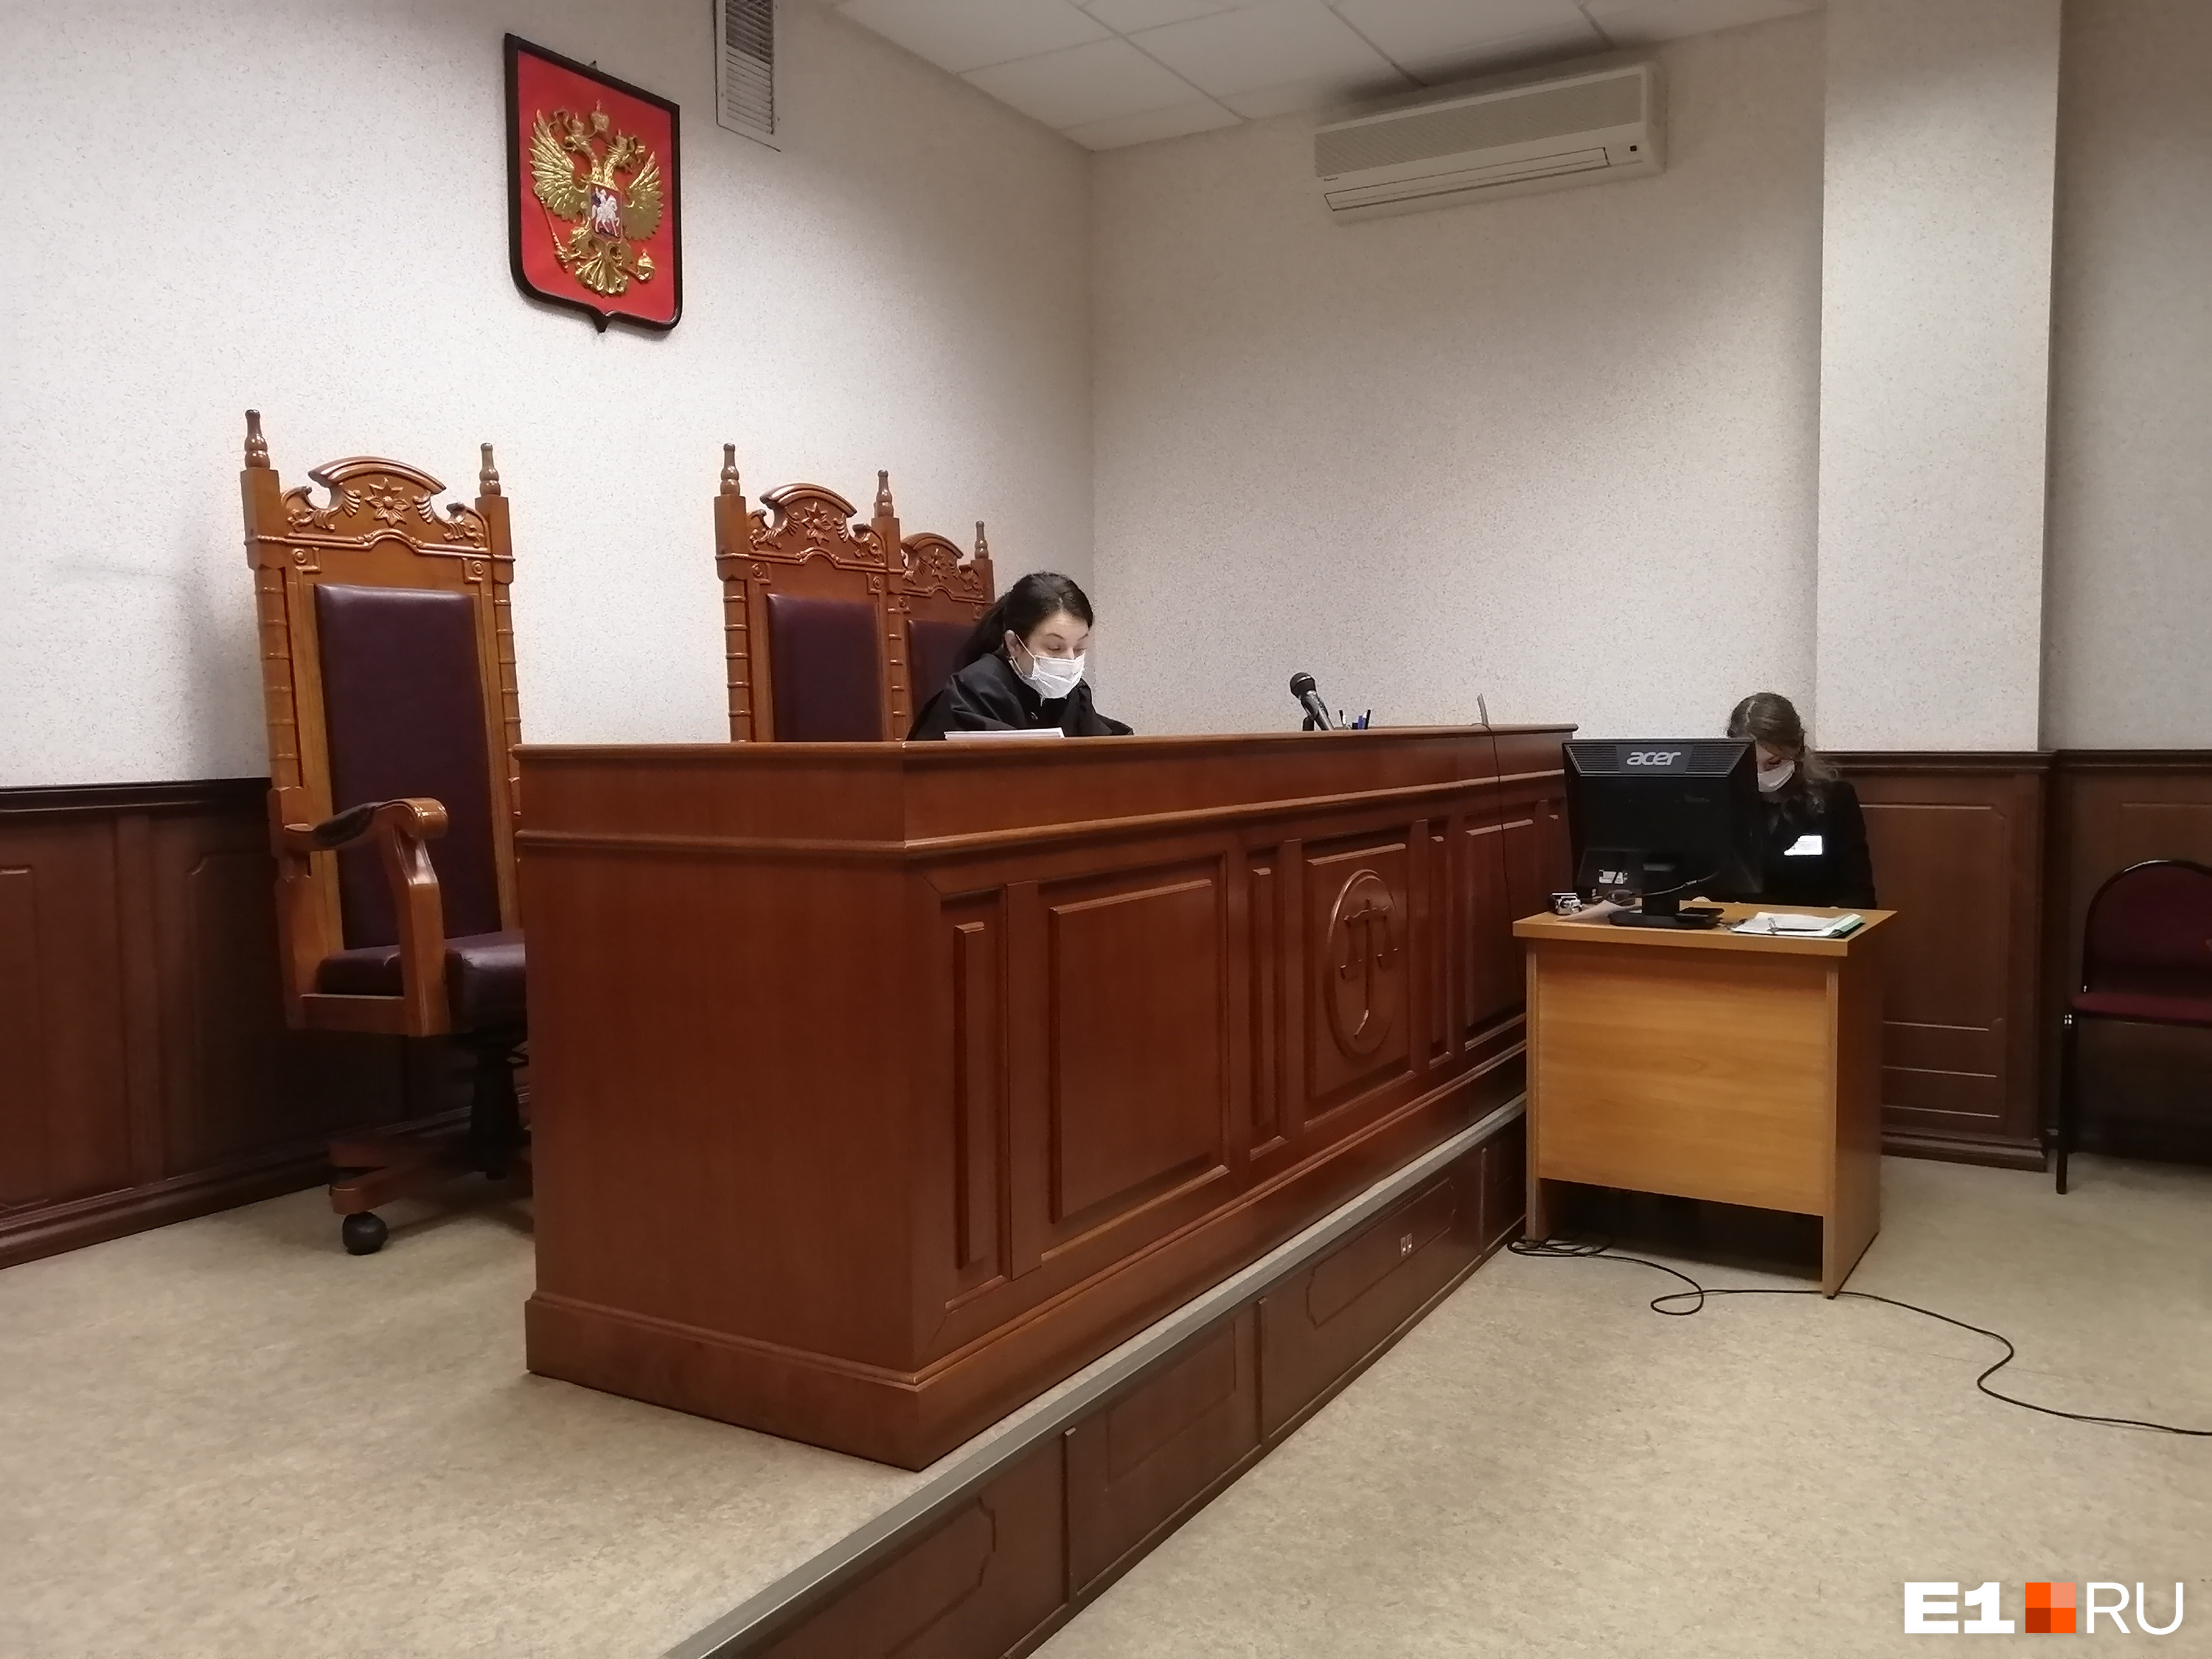 Судья Ольга Дыбкова встала на сторону обвинения